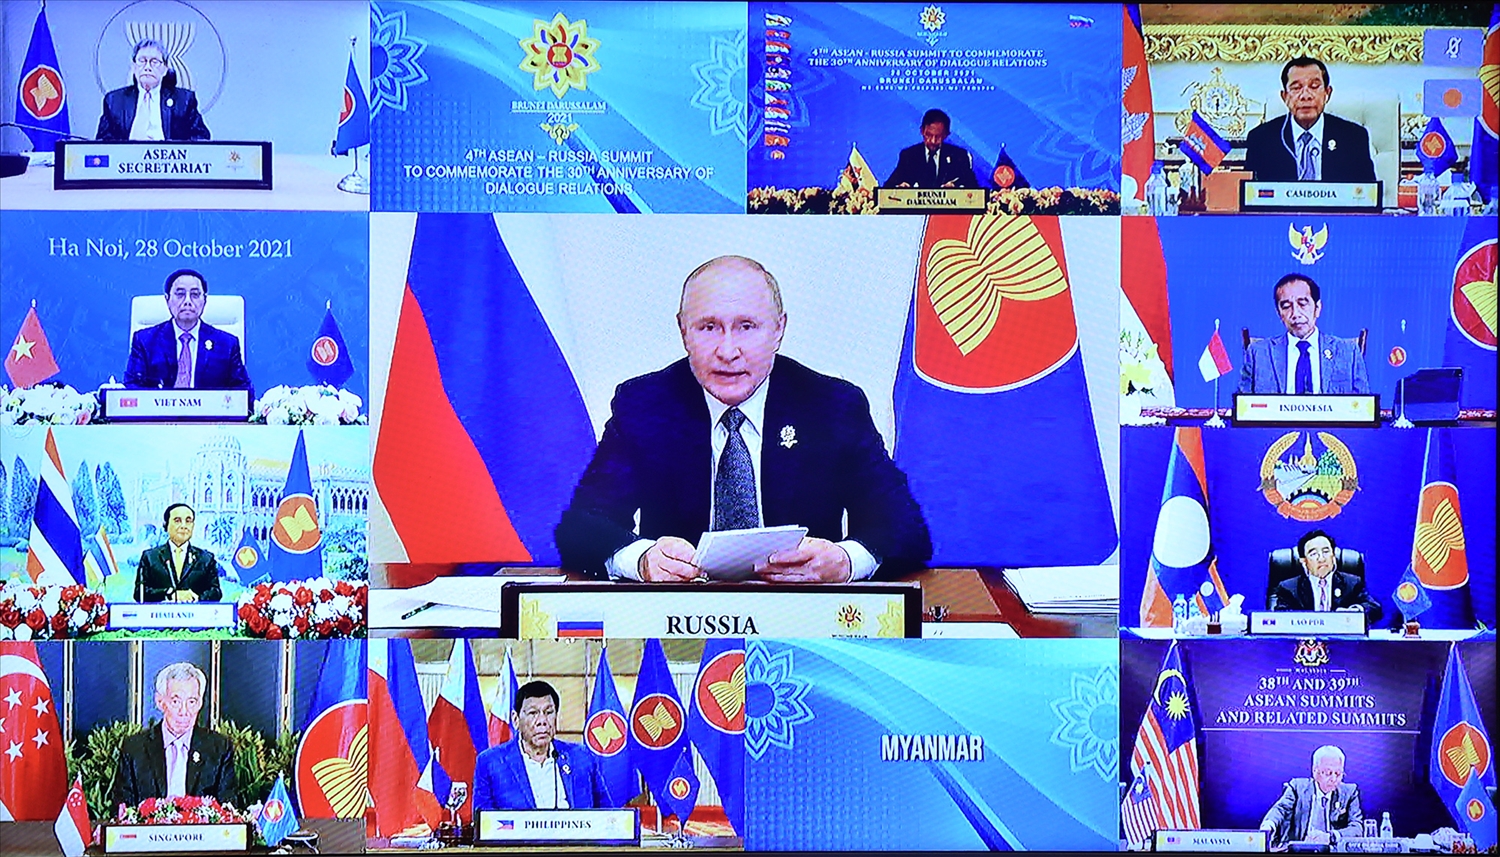 Tổng thống Nga Vladimir Putin nhấn mạnh, ASEAN là đối tác chiến lược tin cậy của Nga và Nga sẵn sàng hỗ trợ ASEAN trong phòng chống, kiểm soát đại dịch, giảm thiểu các tác động tiêu cực về kinh tế-xã hội. Ảnh: VGP/Nhật Bắc